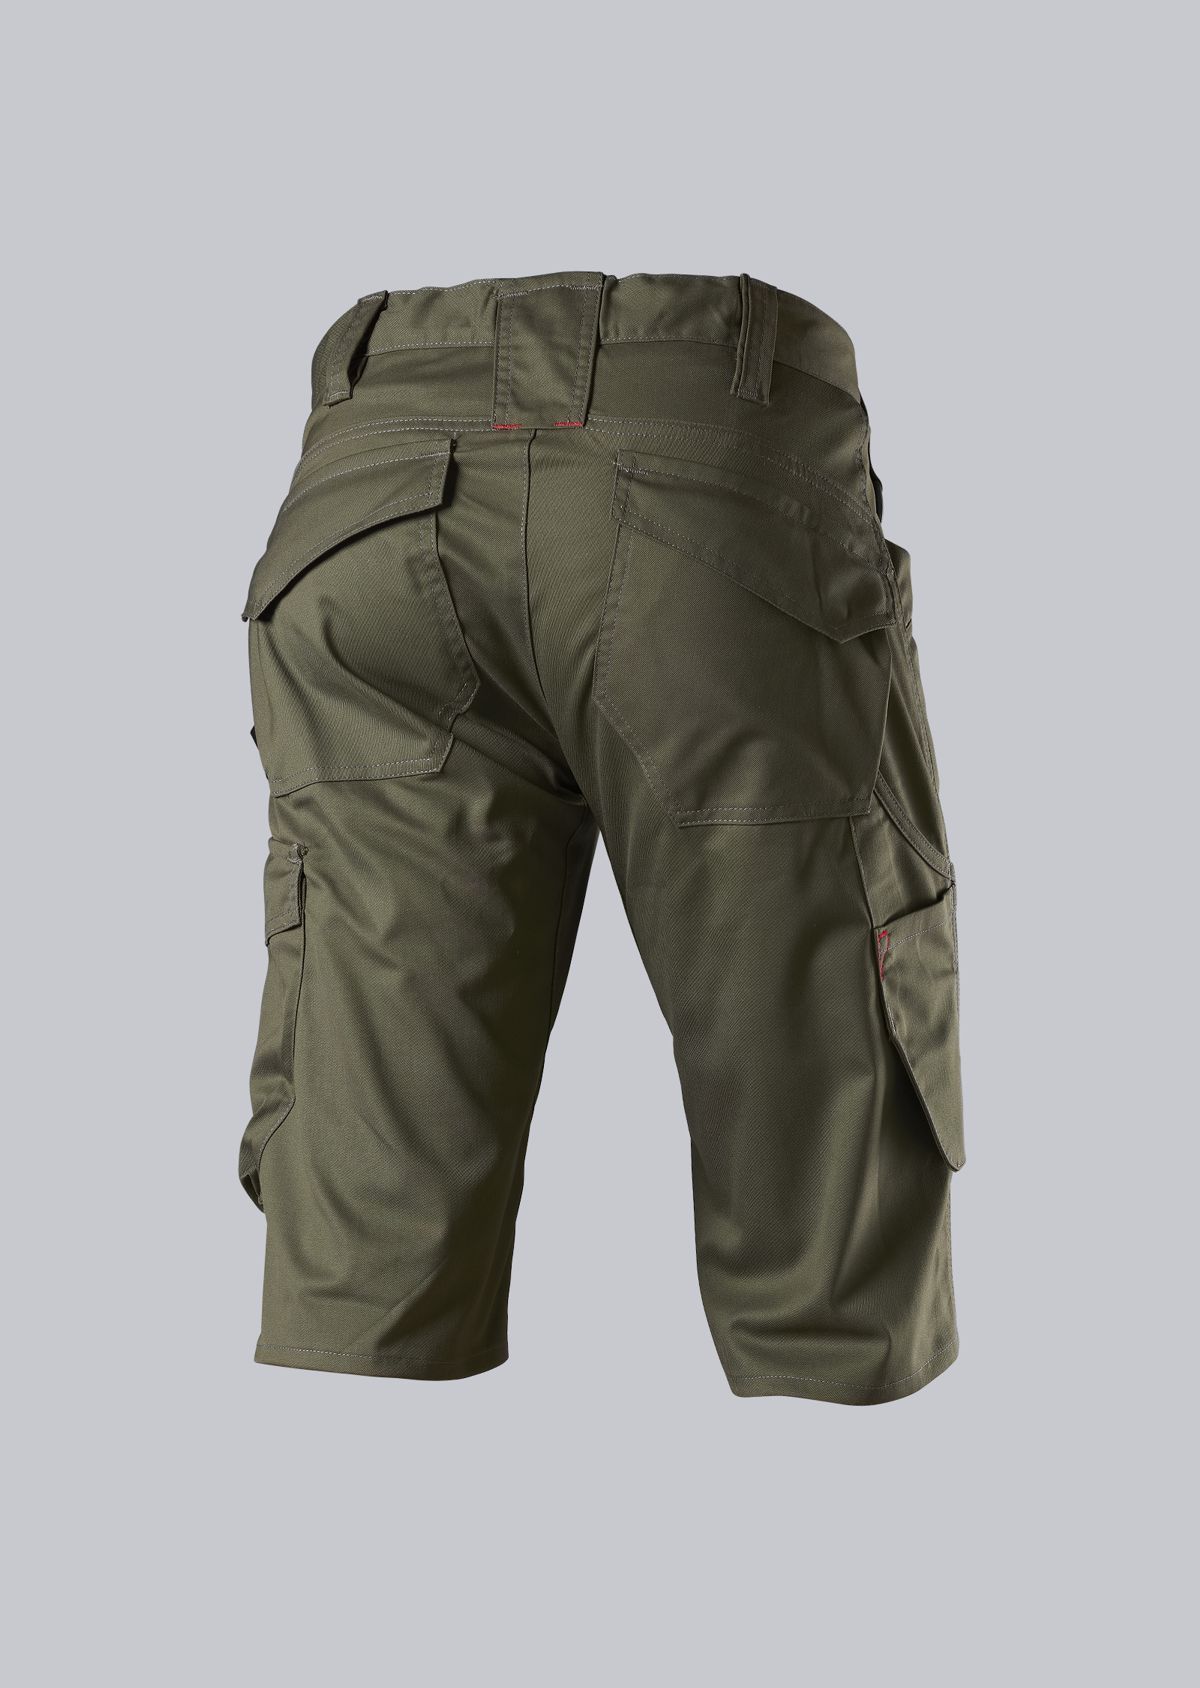 BP® Shorts